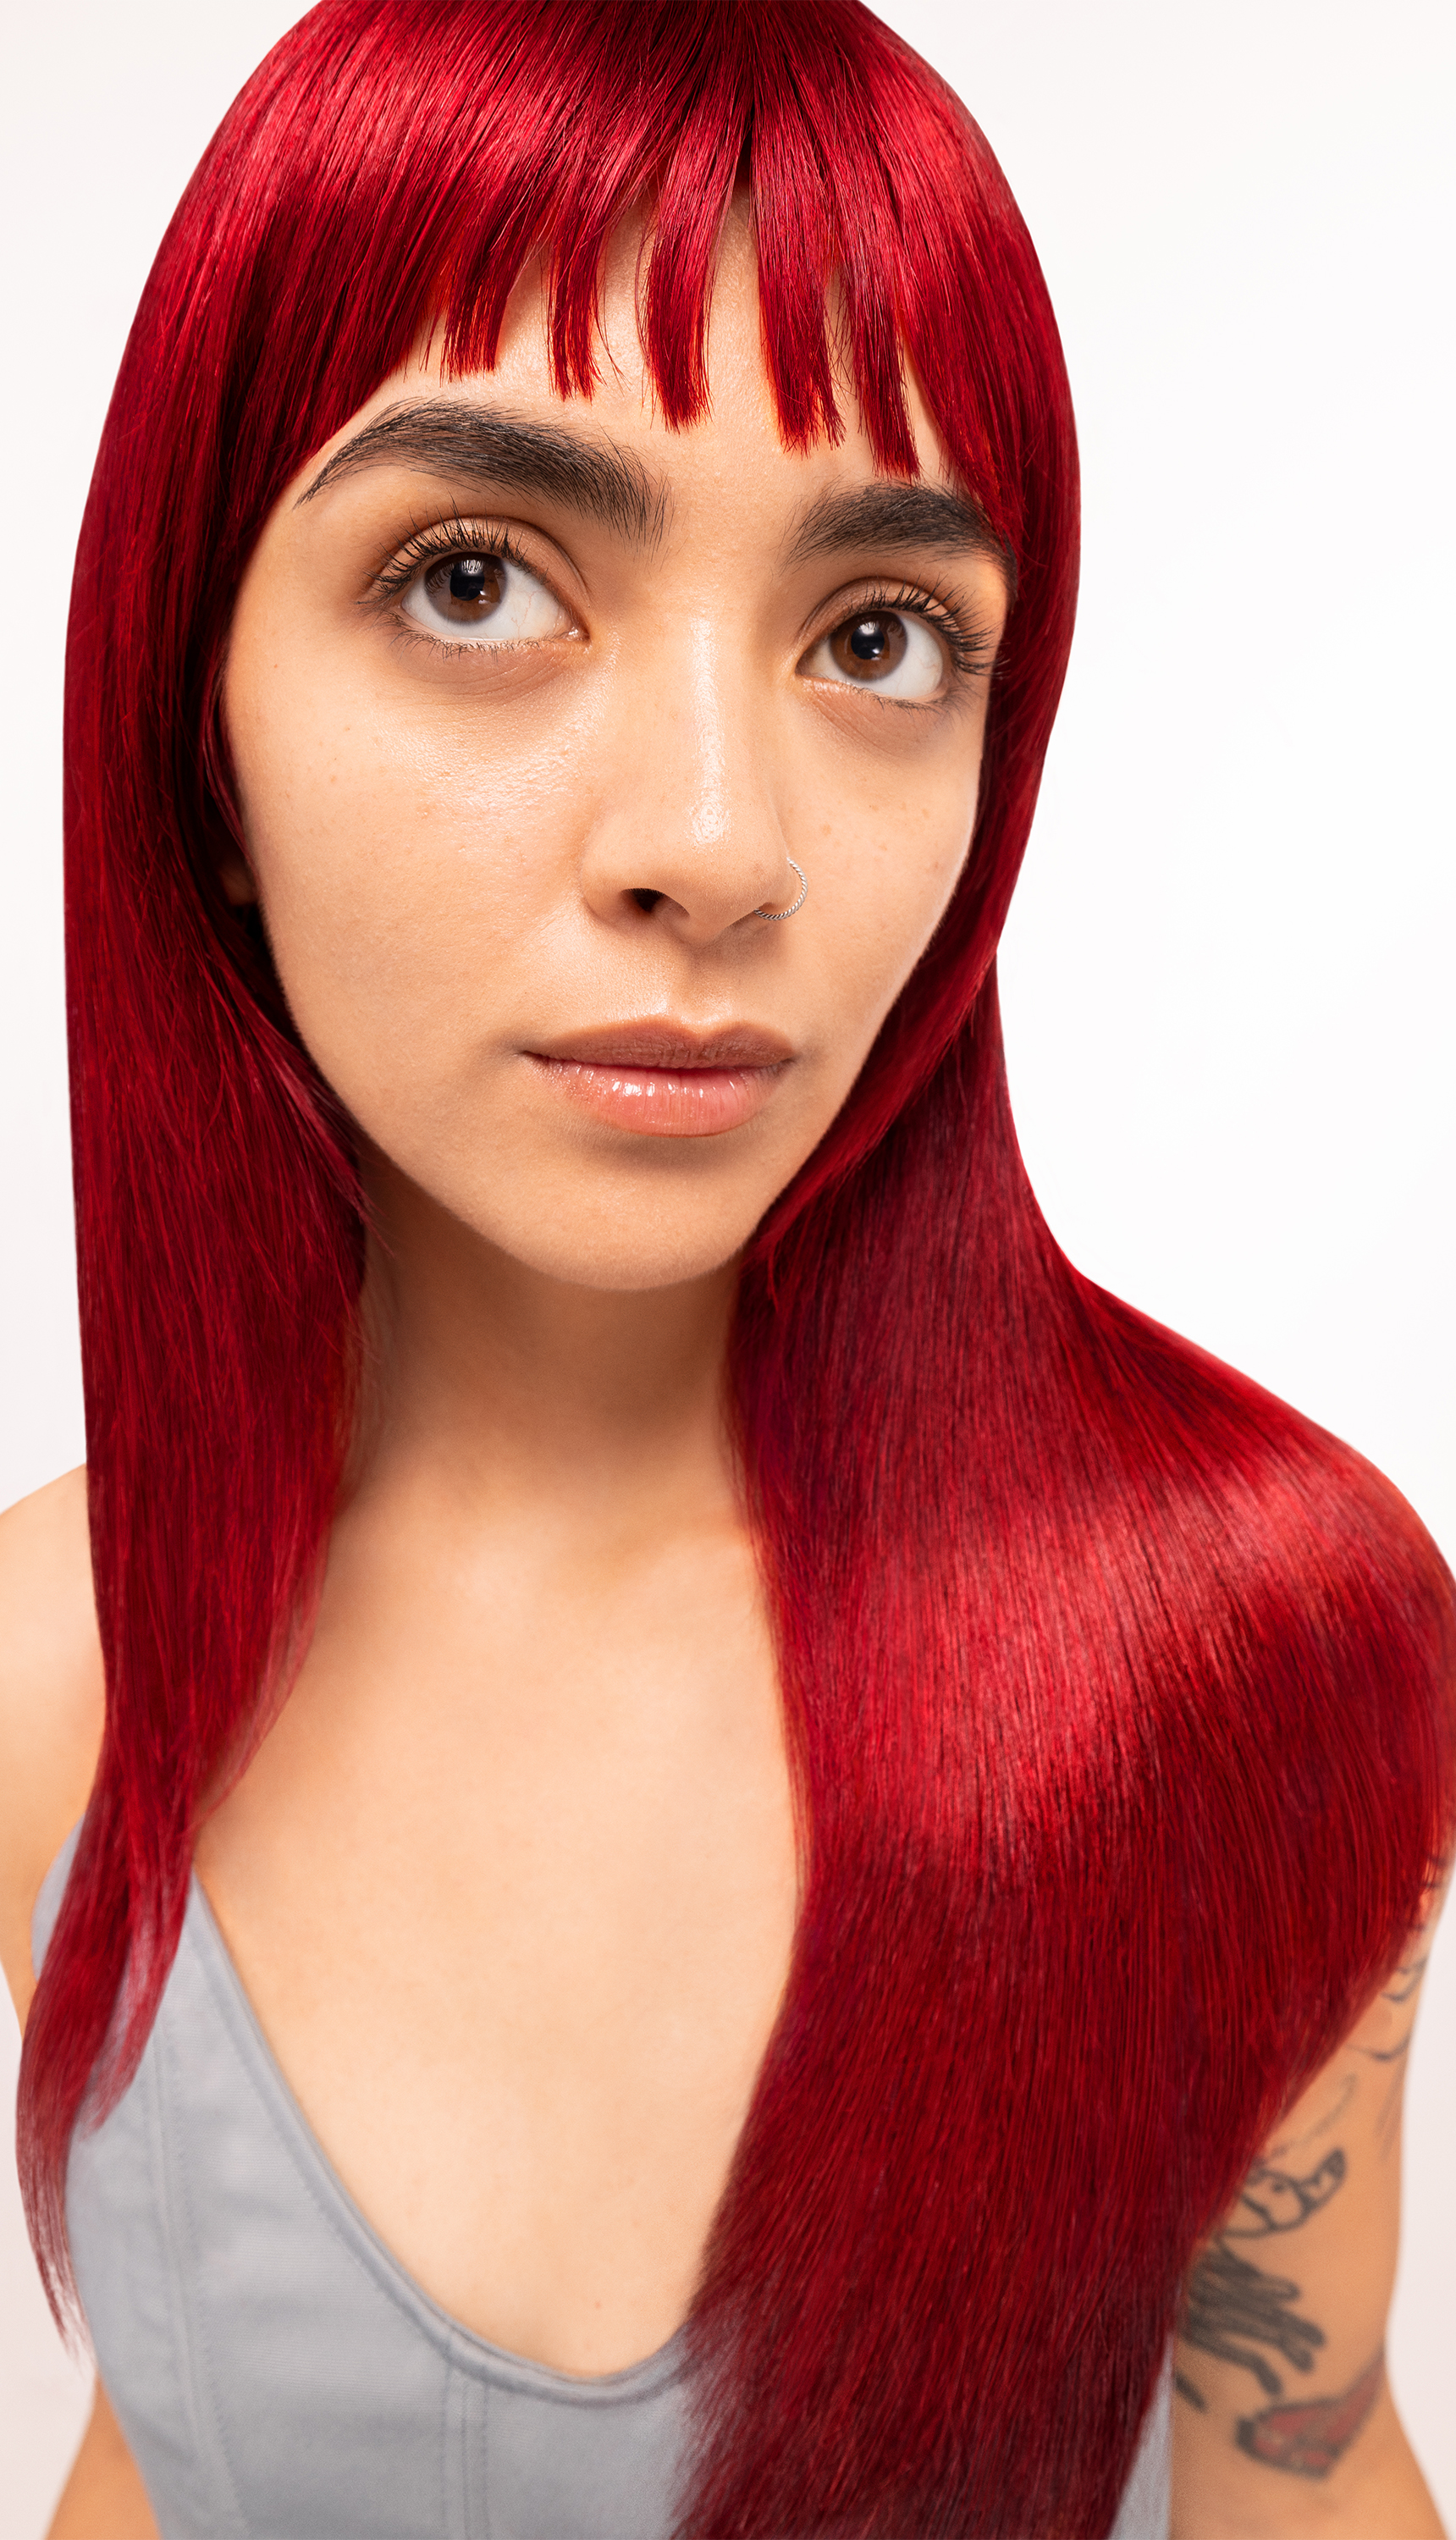 Model with red hair, achieved with Bleach London No Bleach Hair Dye